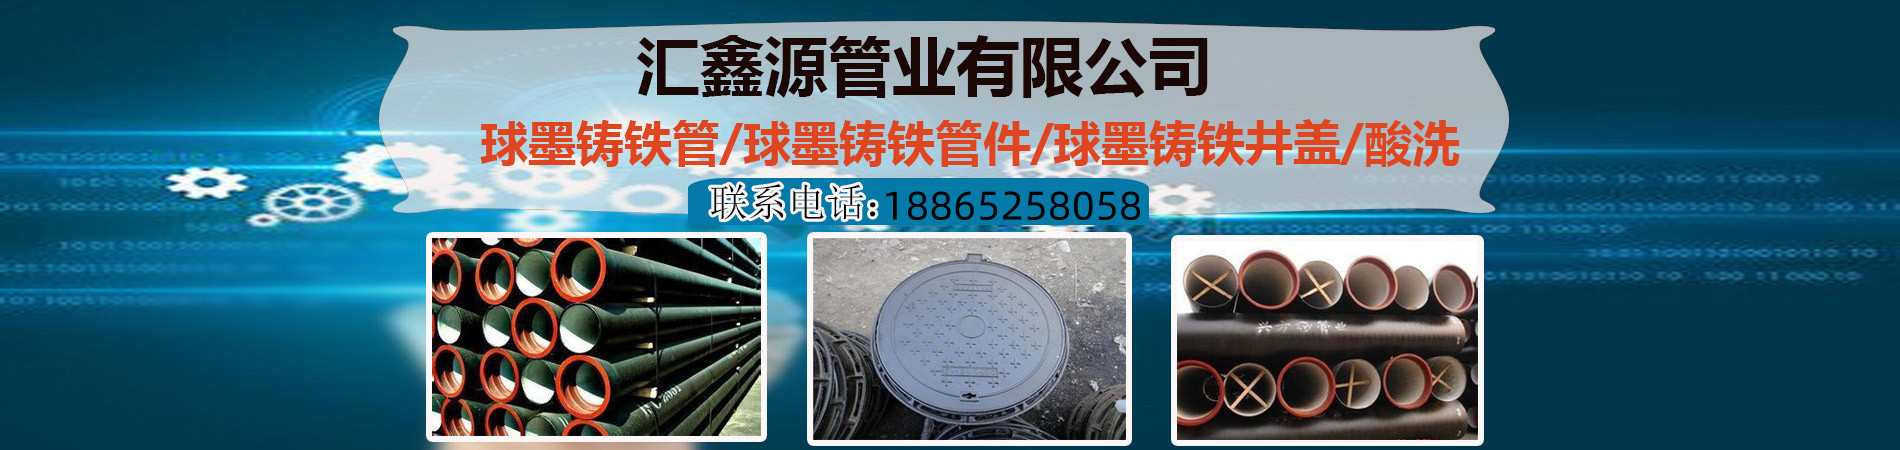 DN50柔性铸铁排污管、合肥本地DN50柔性铸铁排污管、合肥、合肥DN50柔性铸铁排污管